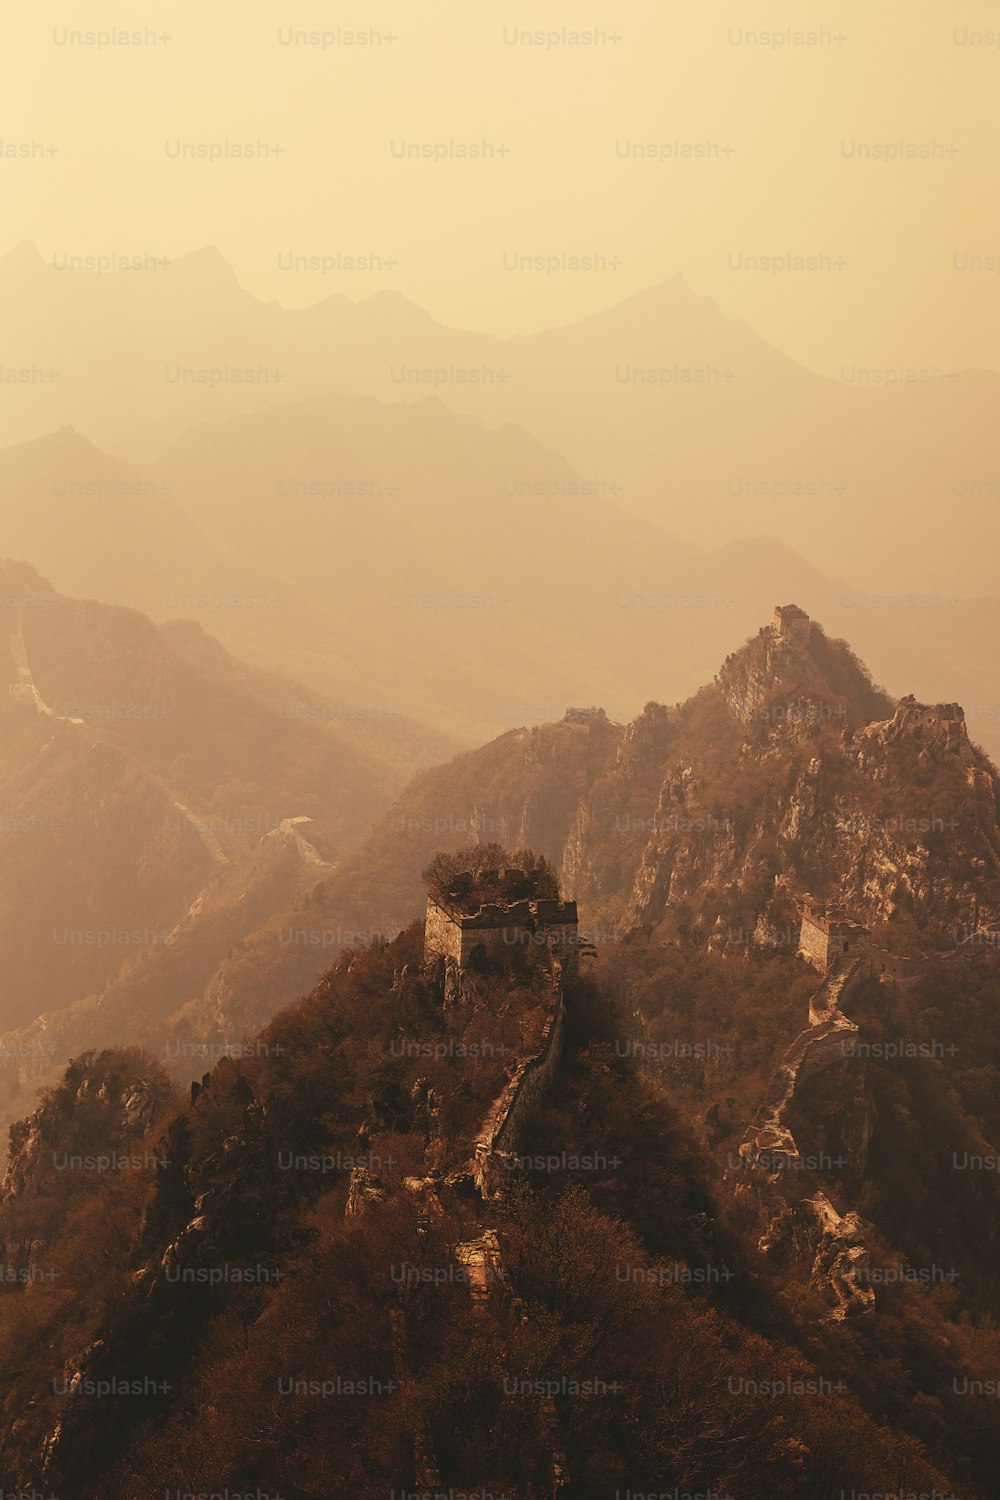 Une vue de la Grande Muraille de Chine depuis le sommet d’une montagne